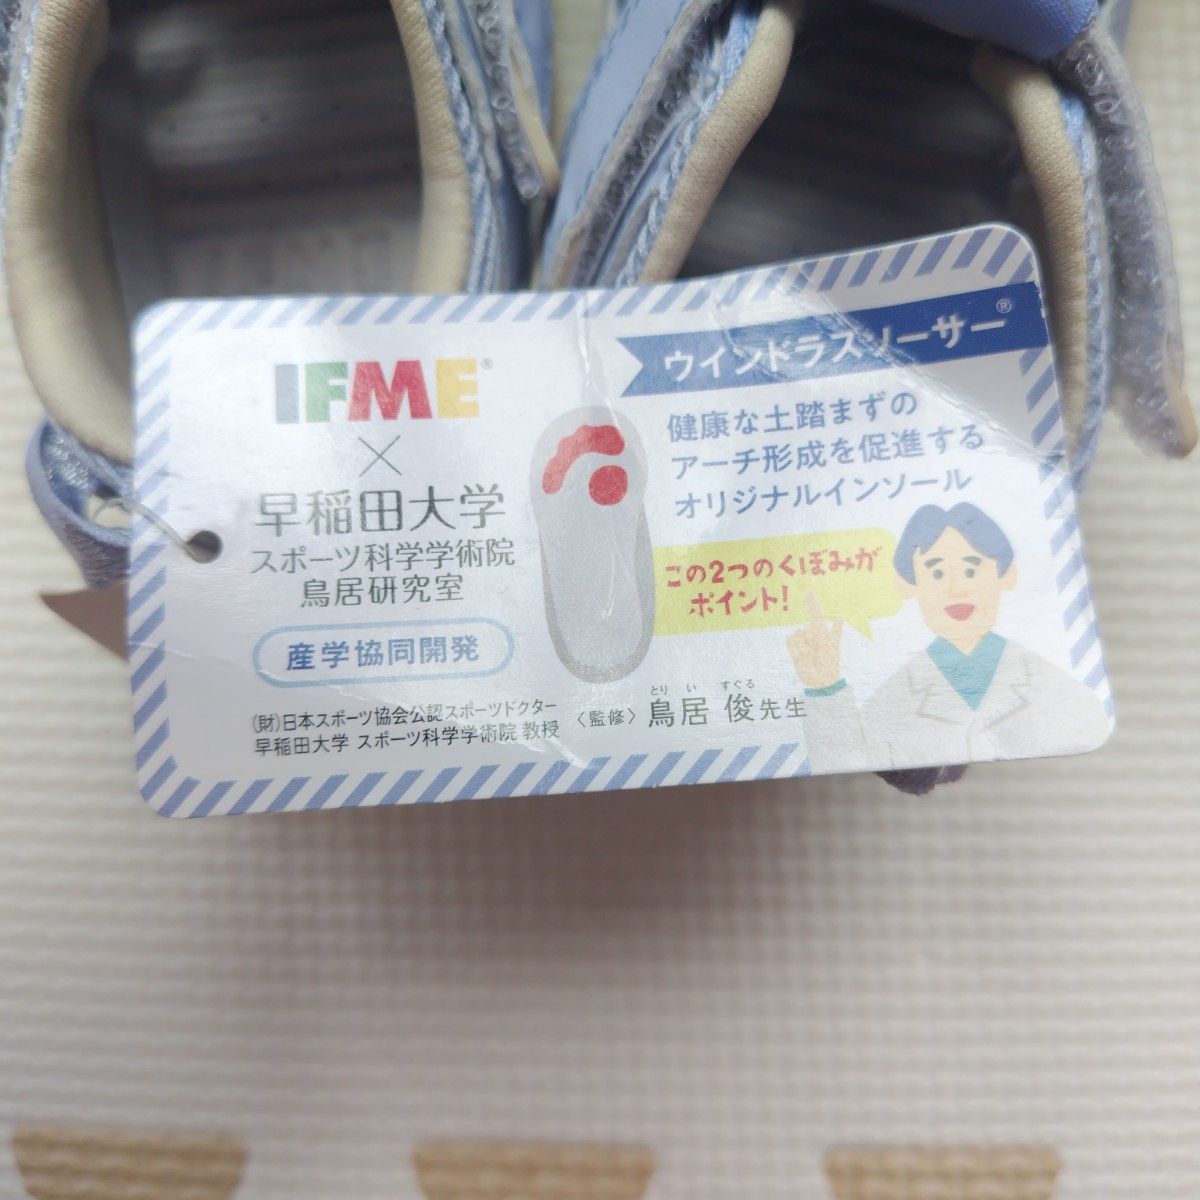 新品未使用  イフミー  IFME  スニーカー  スニーカーサンダル  13.5cm